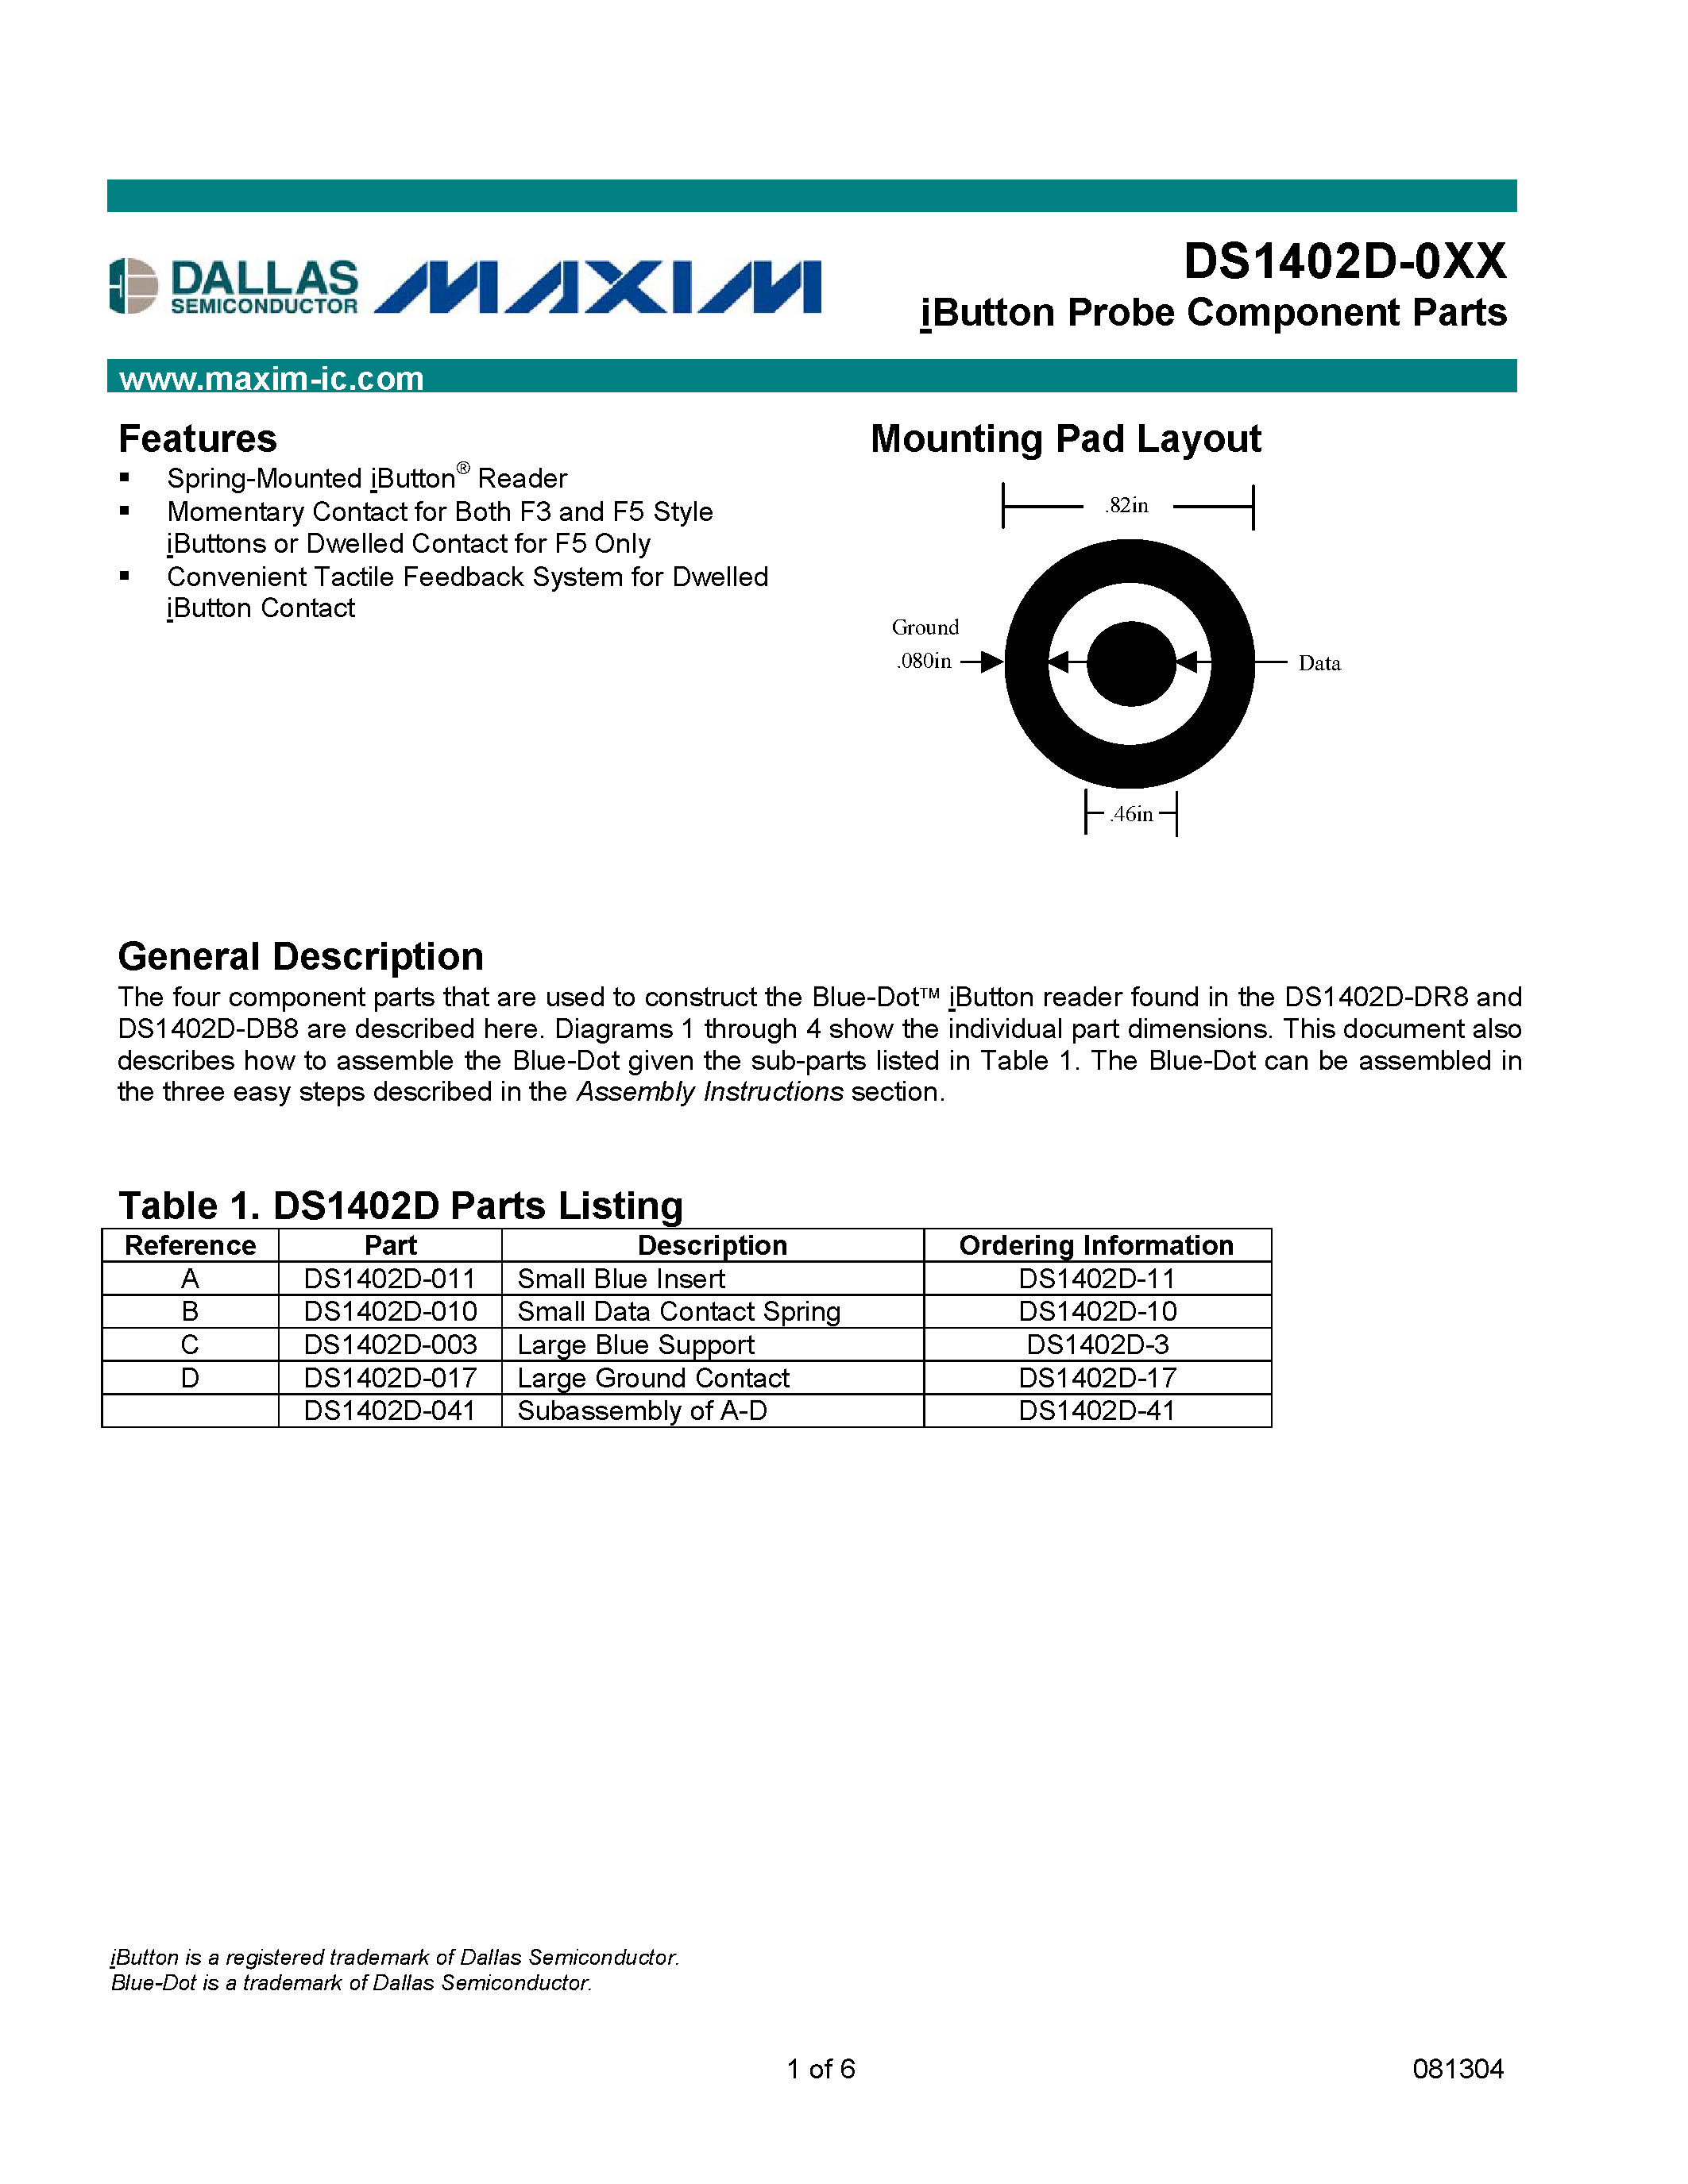 Даташит DS1402D-3 - iButton Probe Component Parts страница 1